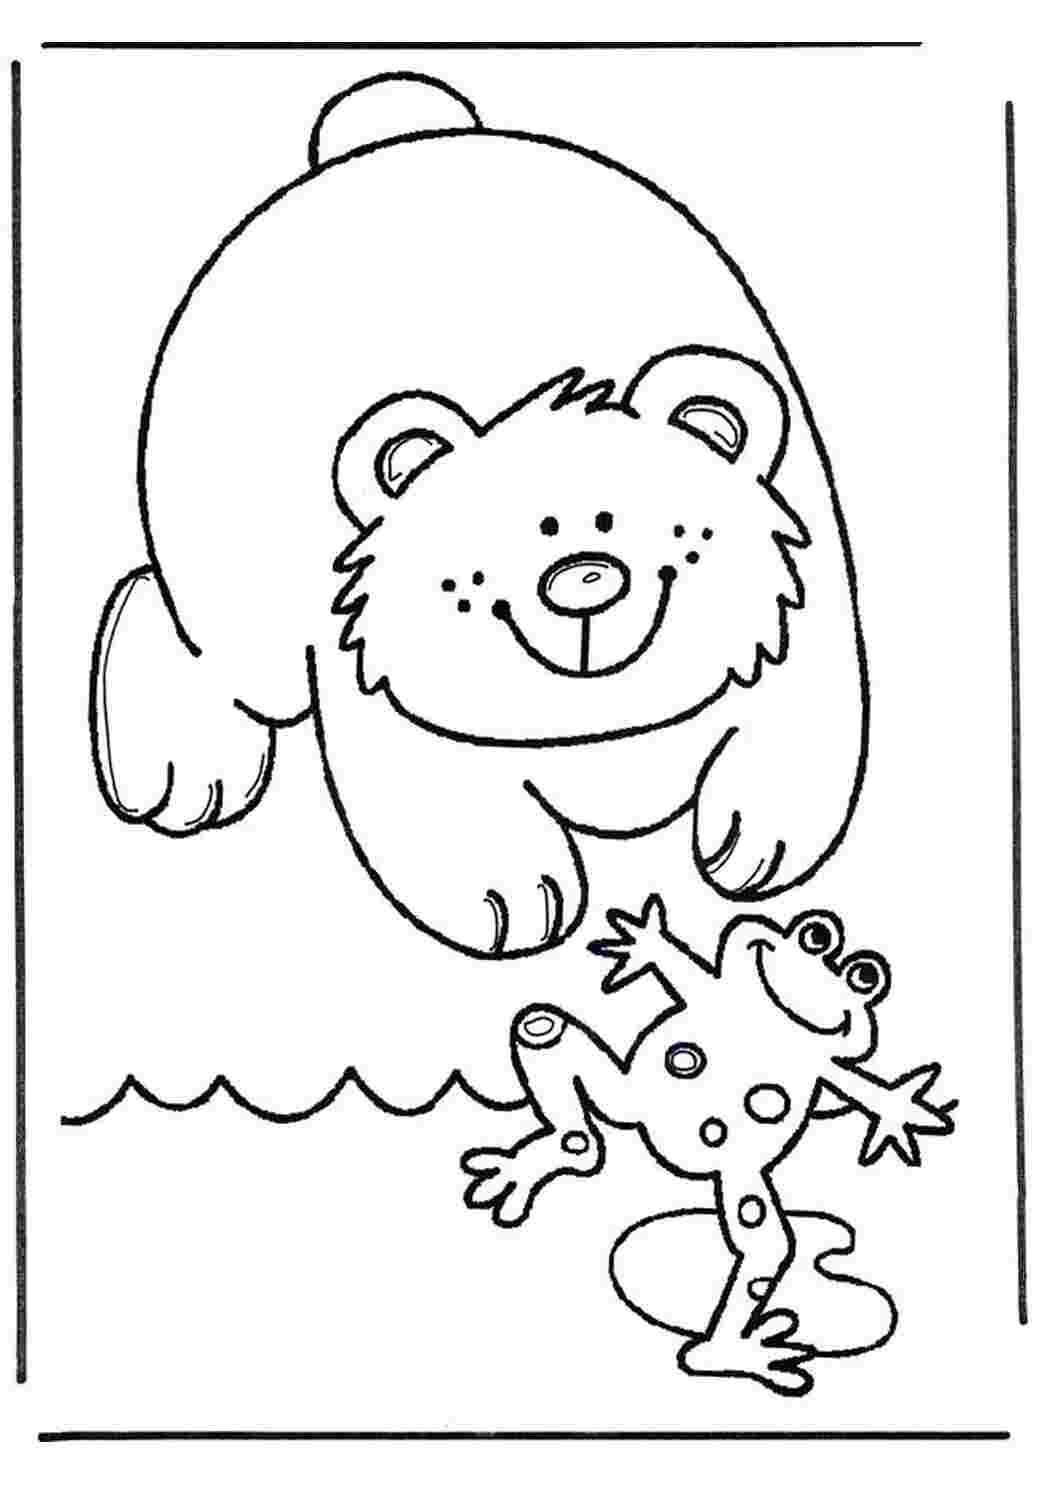 медведь и лягушка картинки